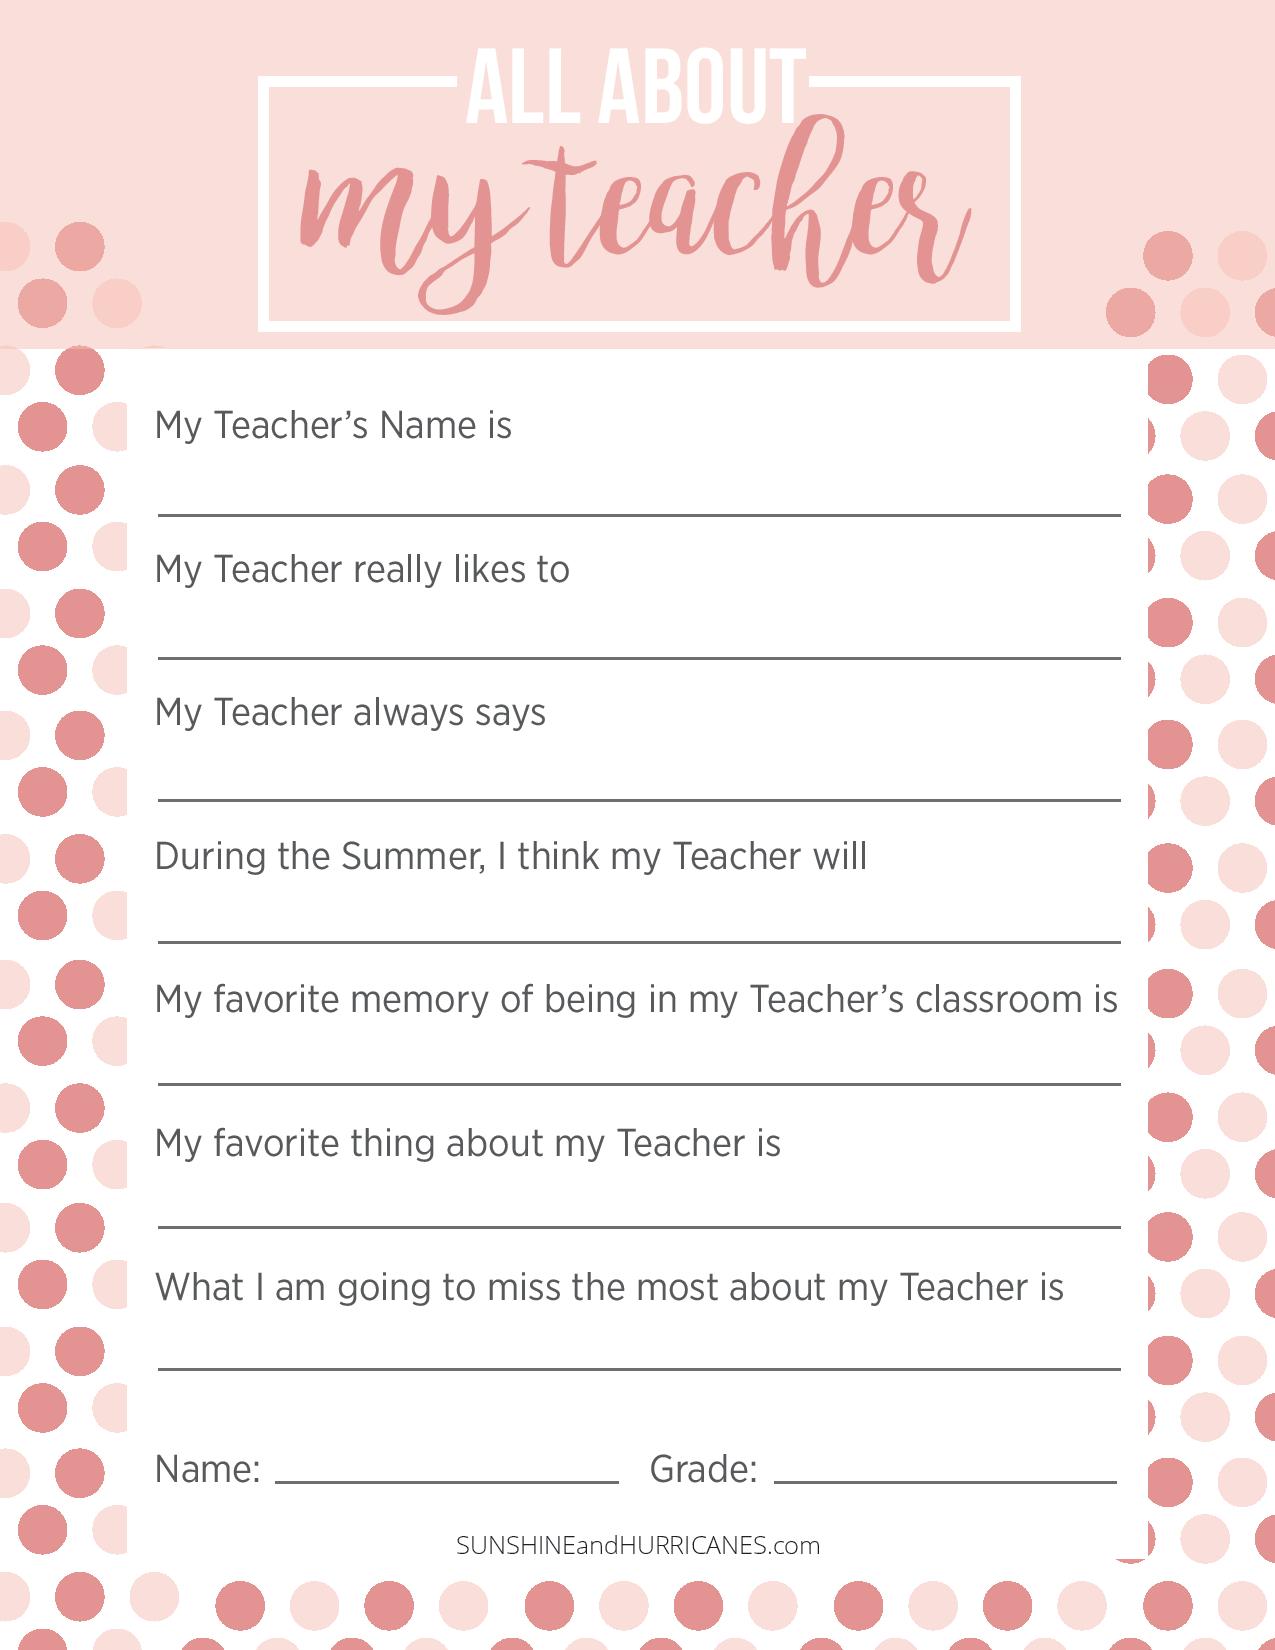 Teacher Appreciation Week Questionnaire A Personalized Teacher Gift